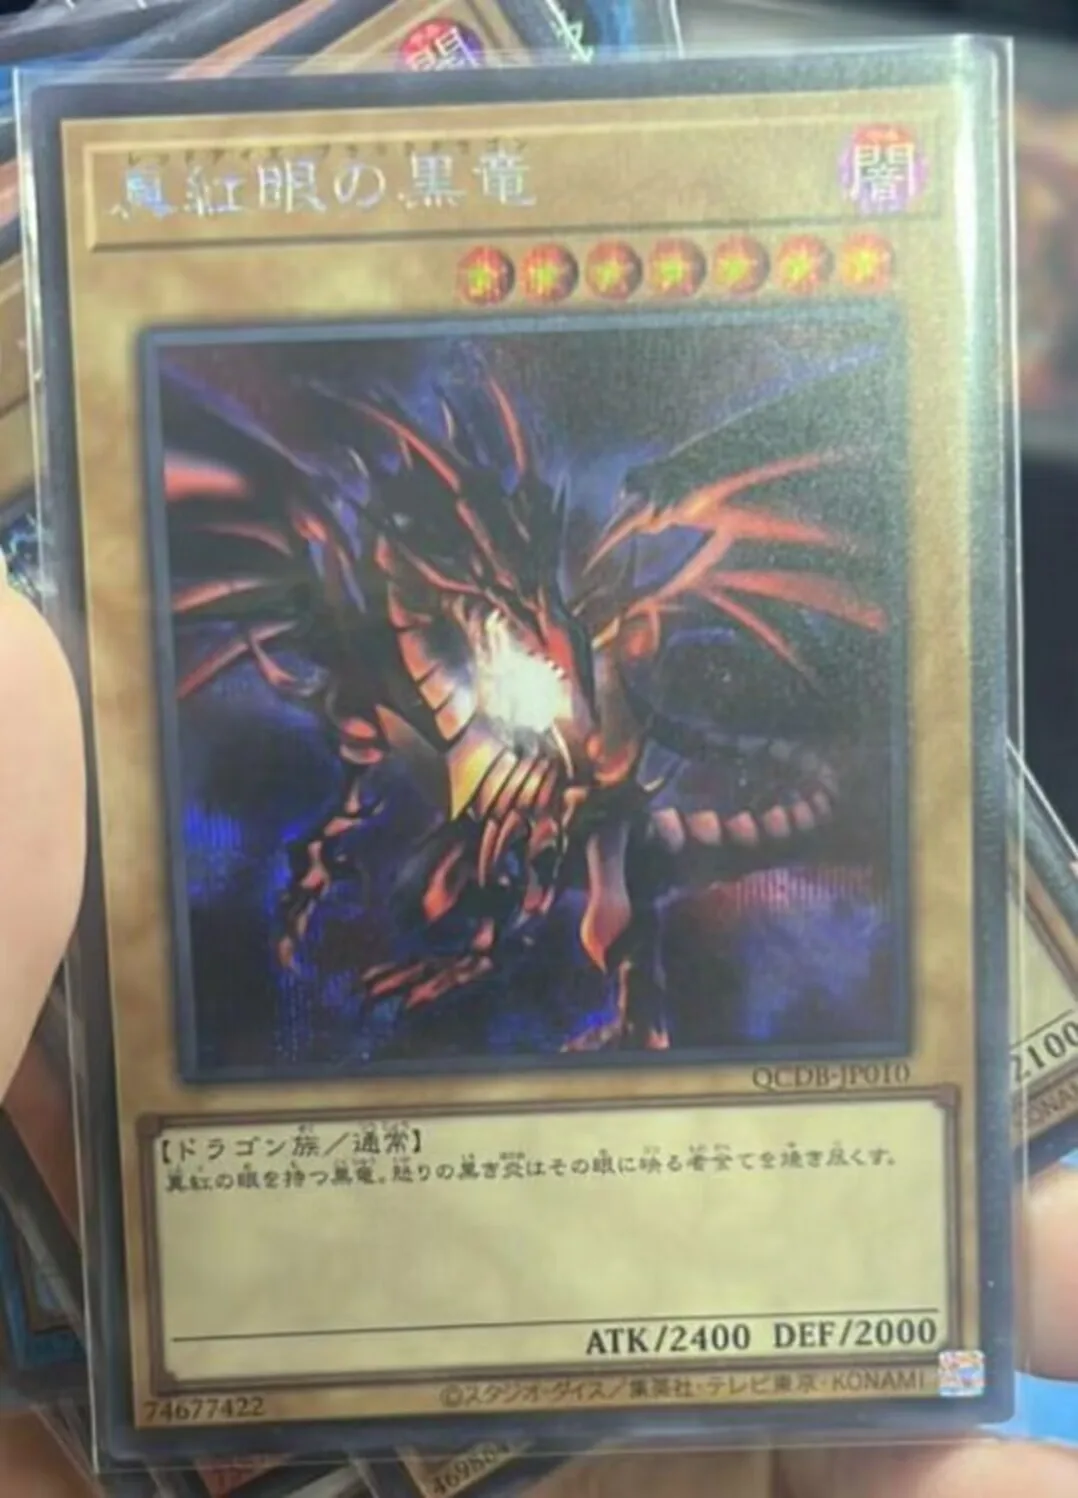 

Duel Monster Yugioh с красными глазами, черный дракон, секретная редкая версия, 25th Duelist Box, японская коллекция, Мятная карточка